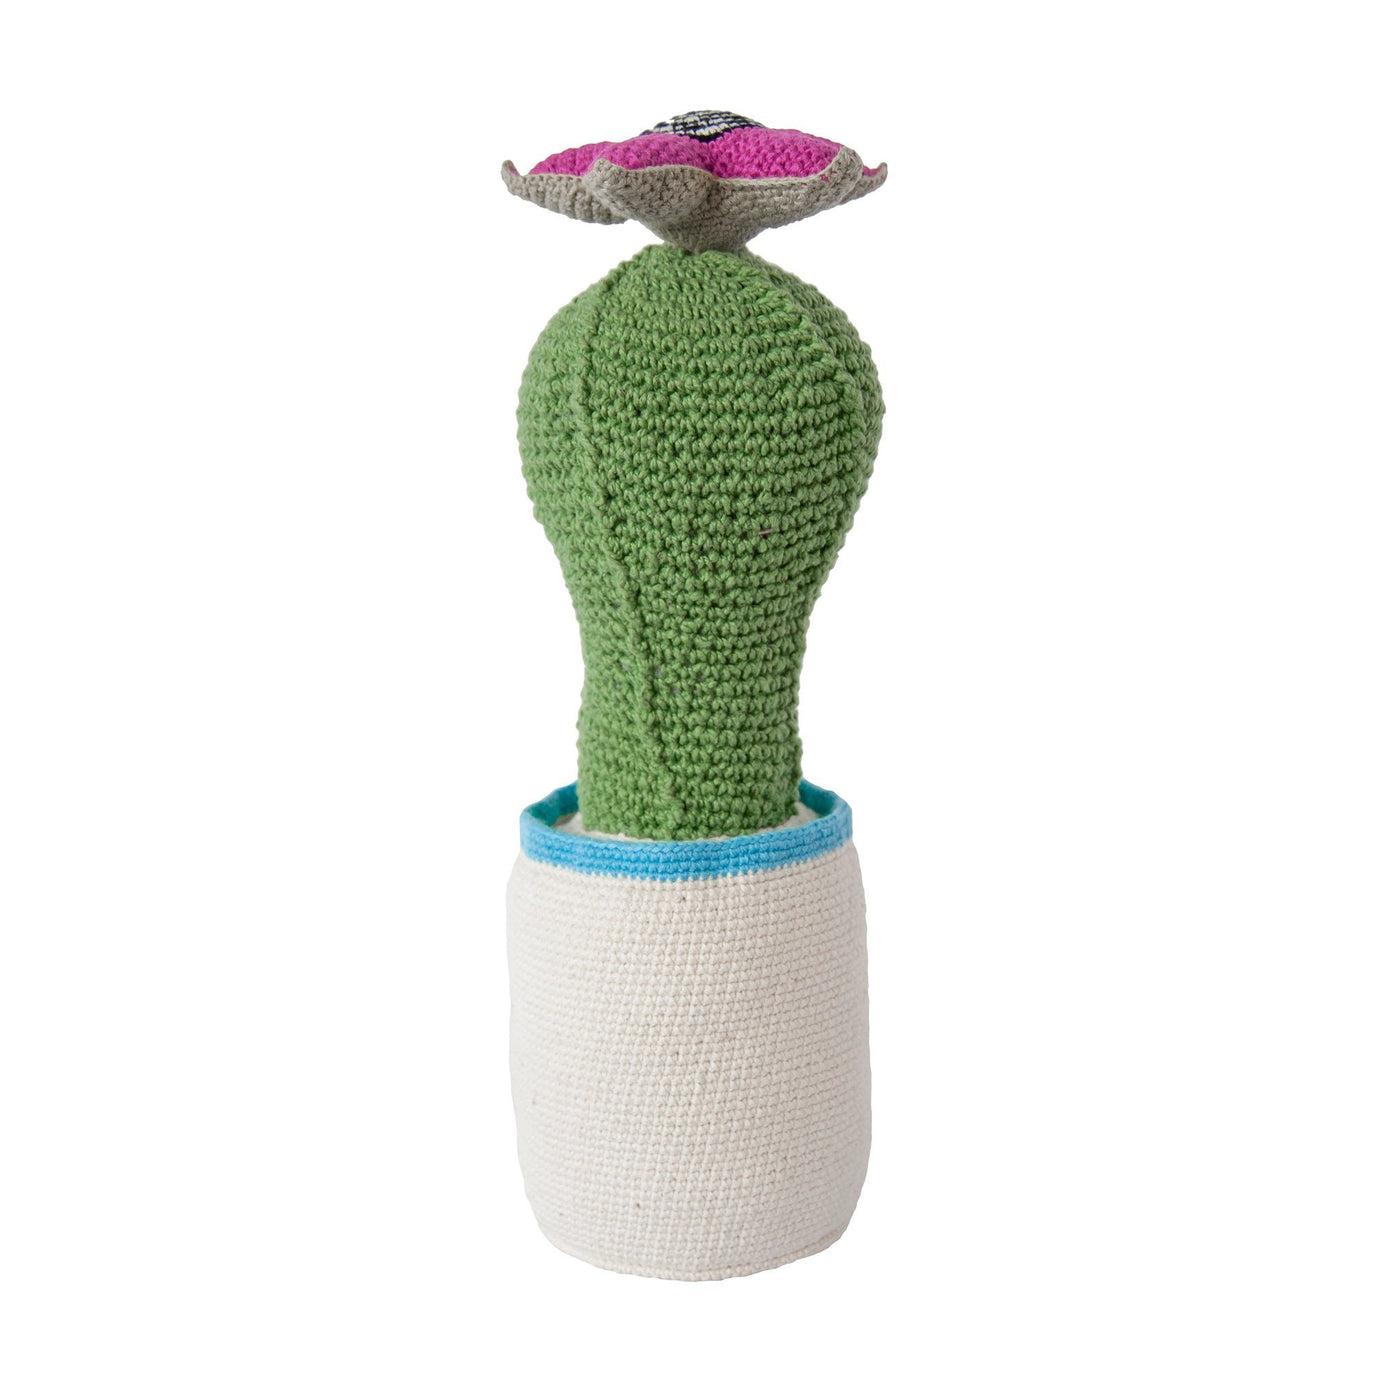 Crochet Single Cactus (large) by Safari Fusion www.safarifusion.com.au